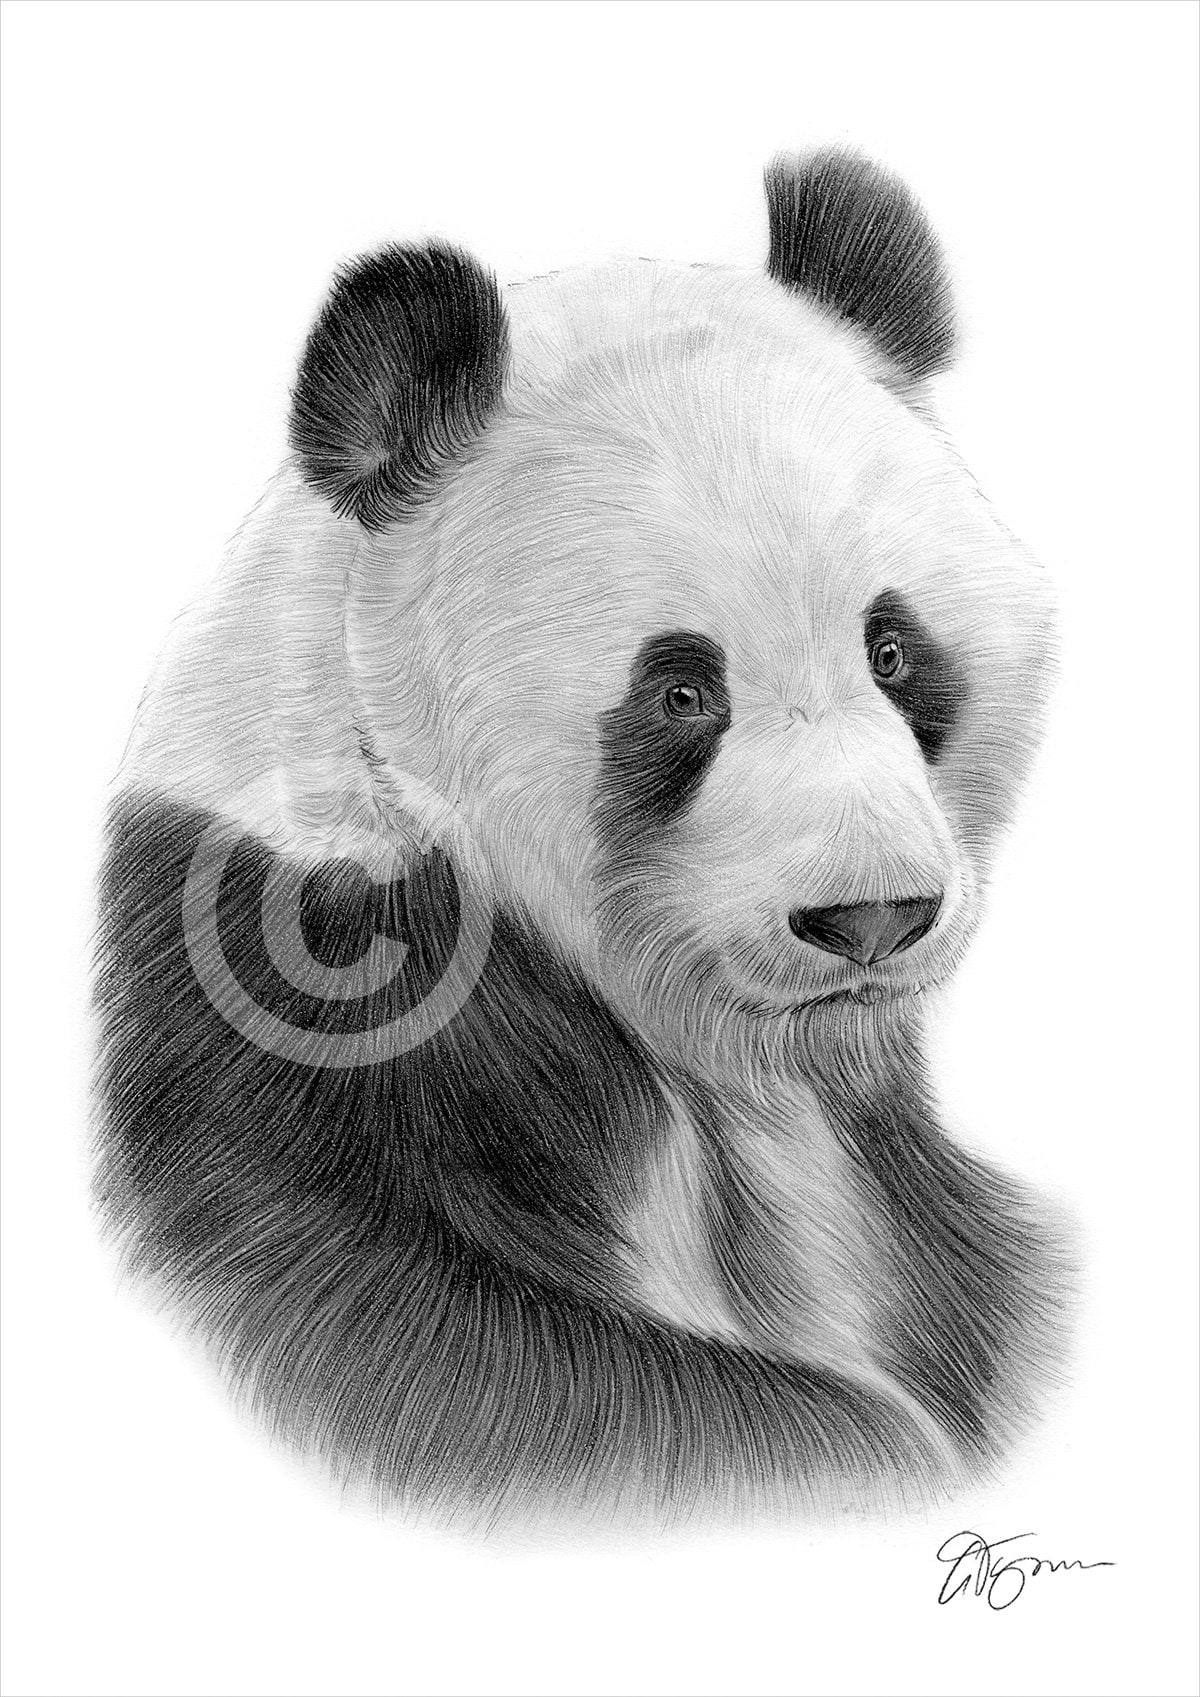 Impresión de dibujo a lápiz de panda gigante arte animal - Etsy México